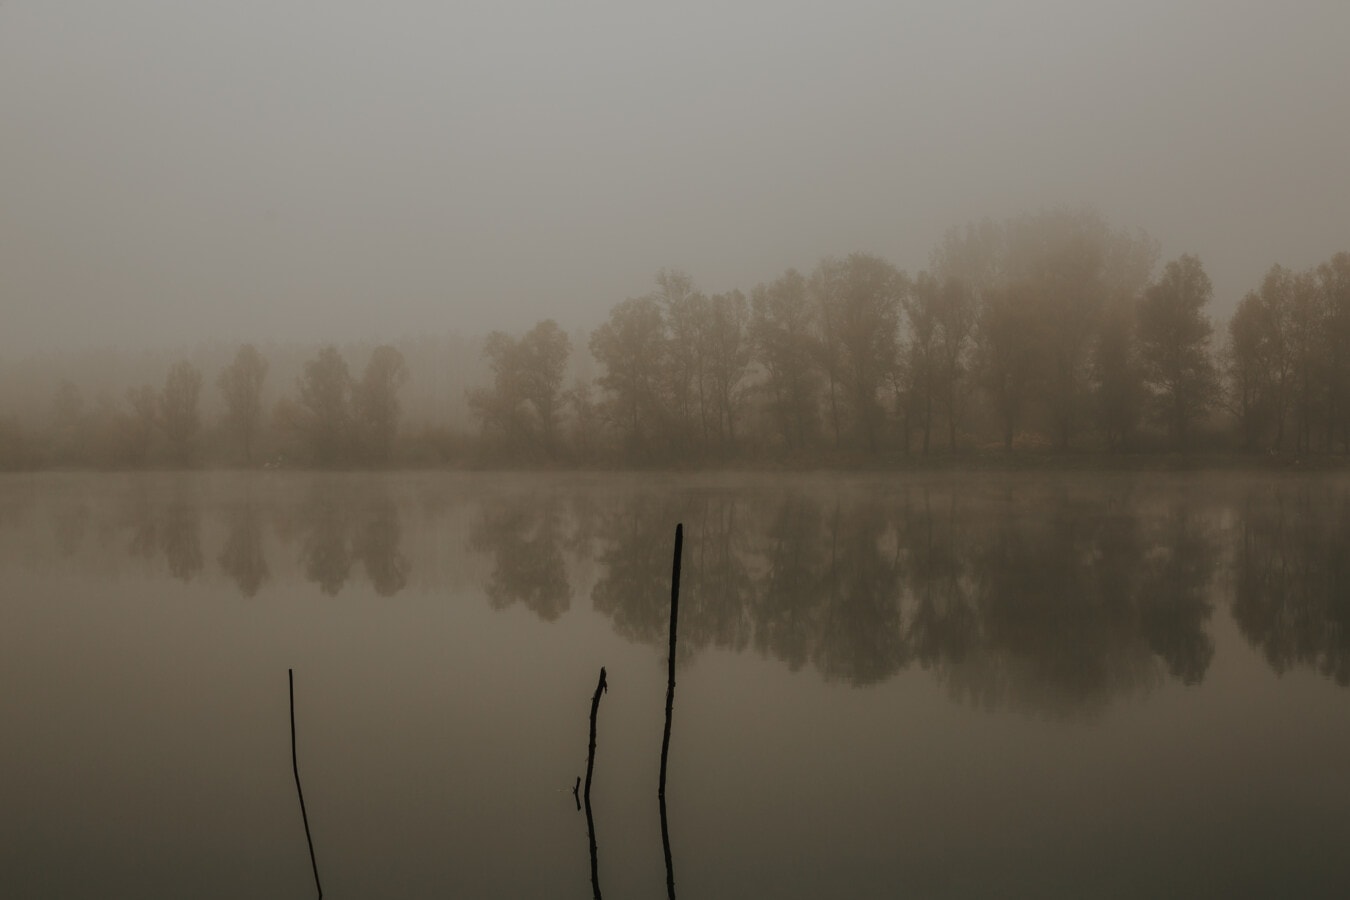 霧, 夜明け, レイクサイド, 湖, 穏やかです, 今晩, ミスト, ランドス ケープ, 水, 霧